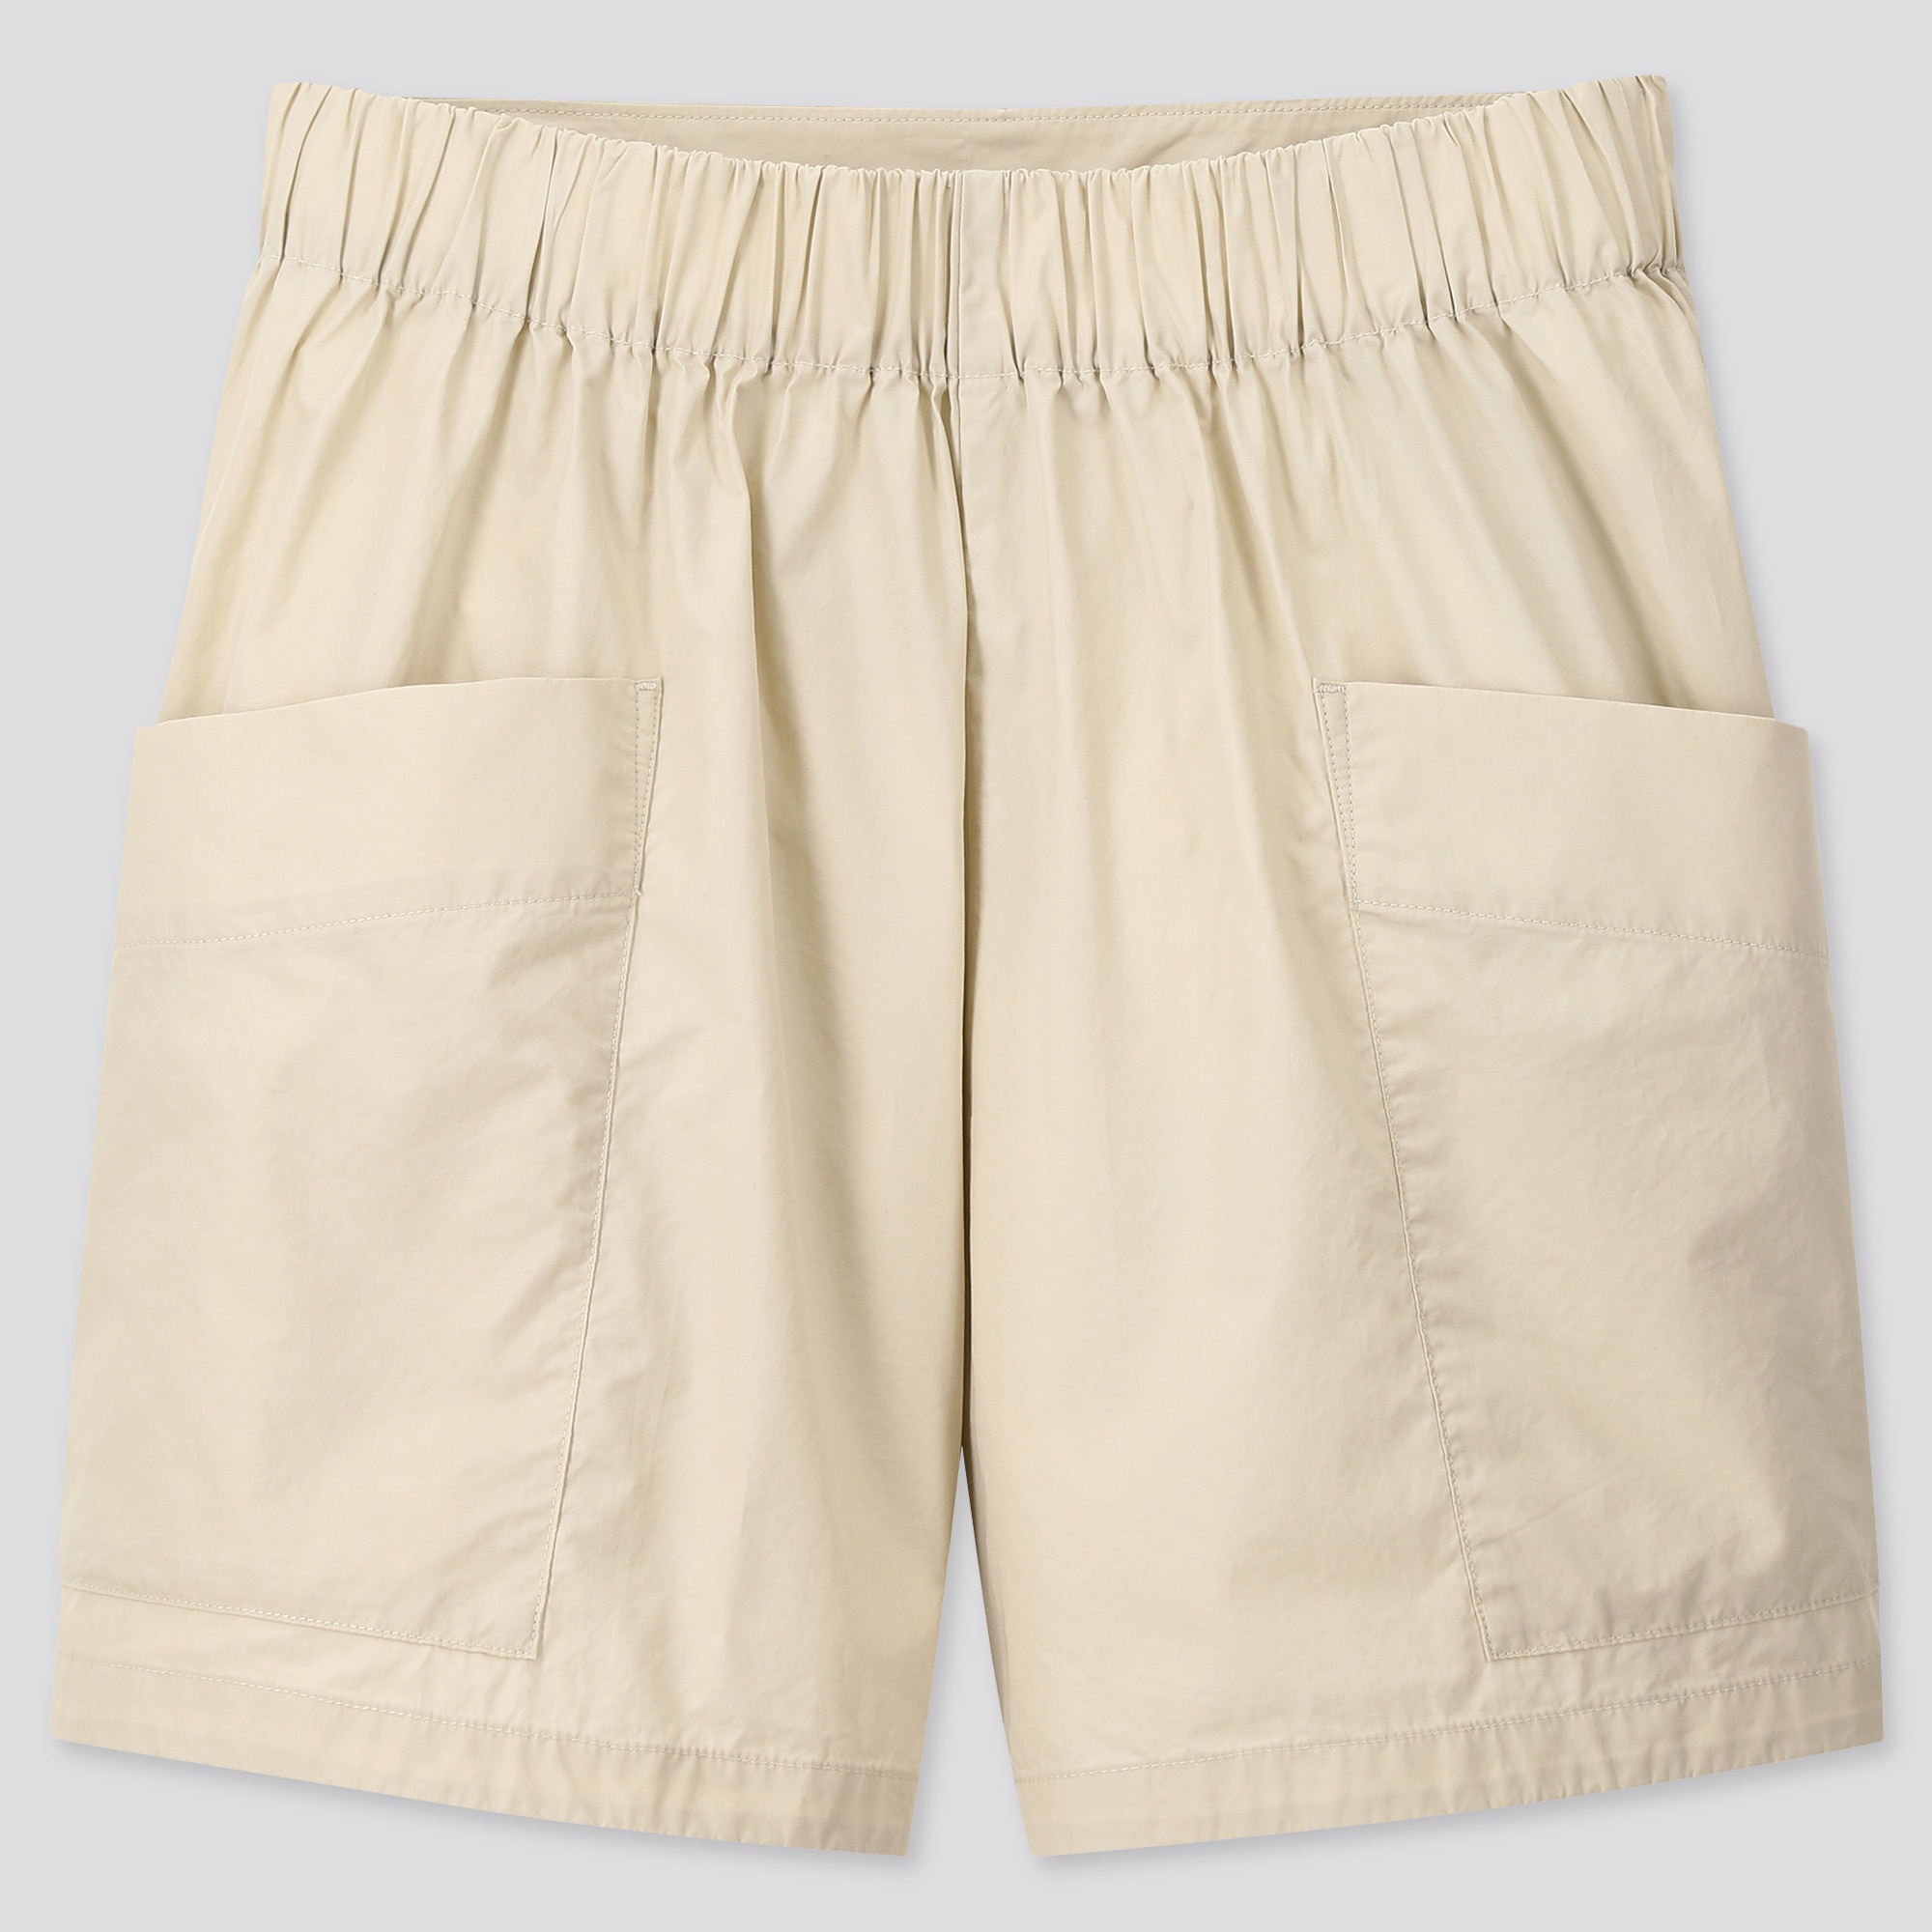 uniqlo cargo shorts